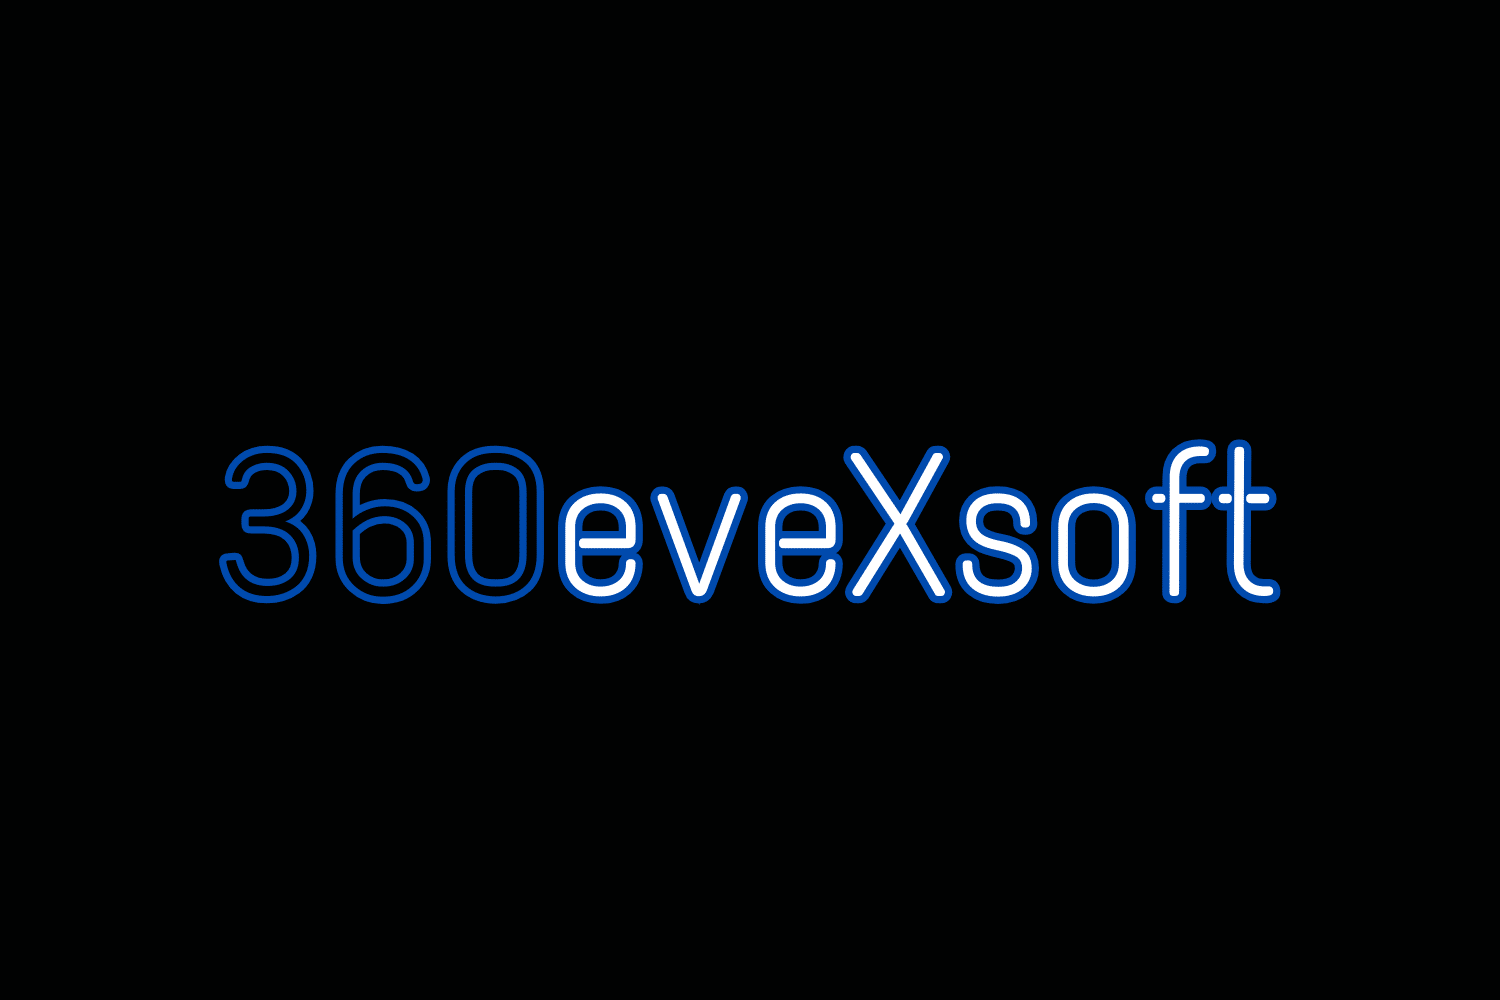 360 Evex Bit zachte aanmelding